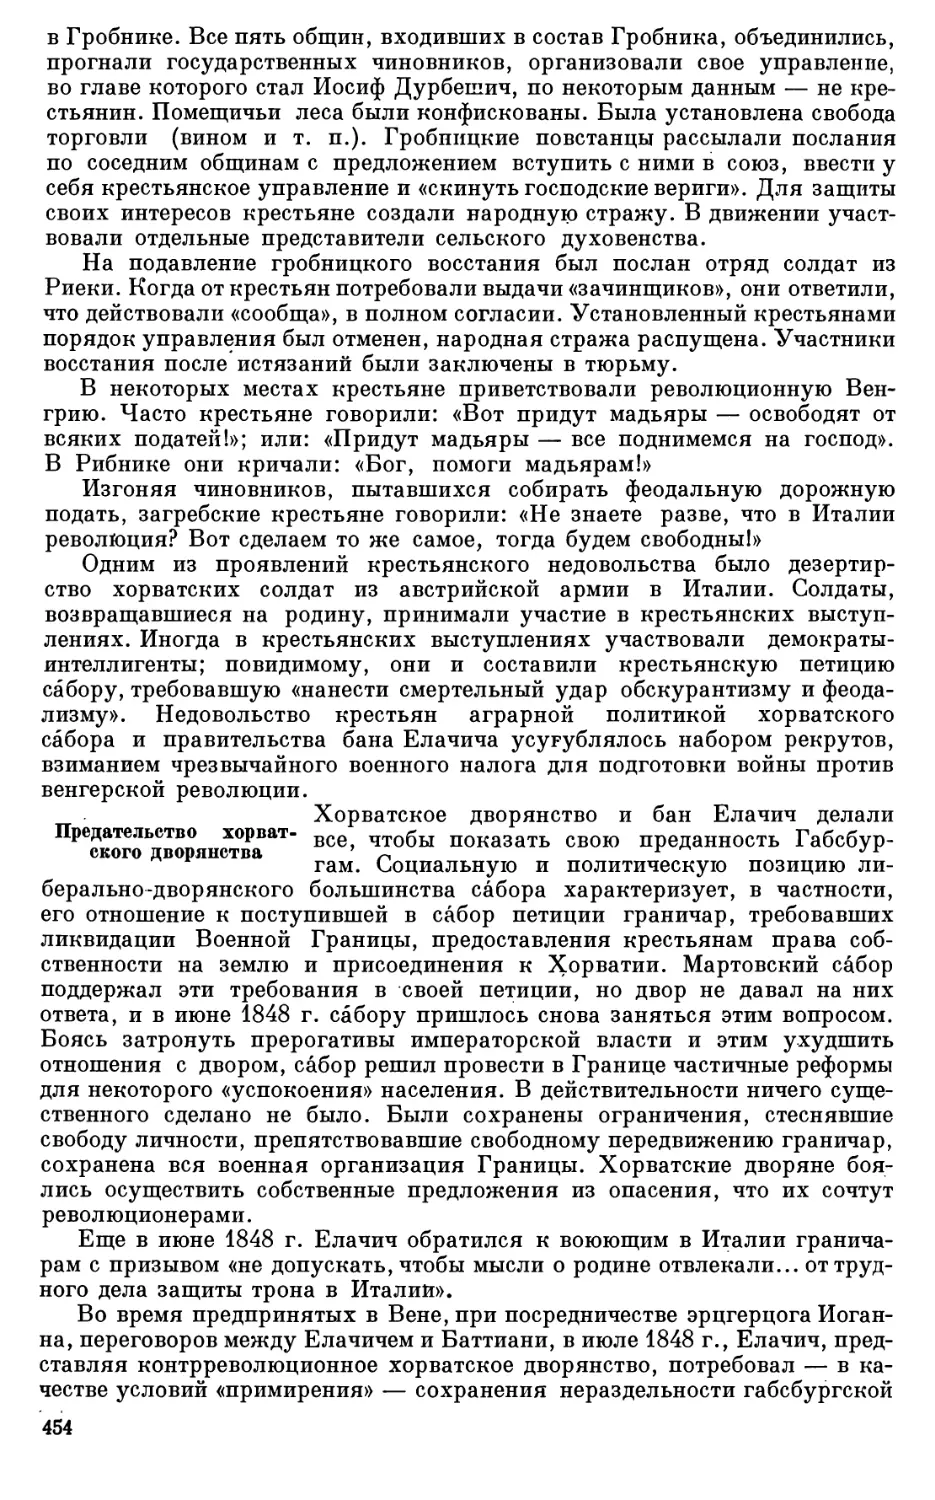 Программа Стратимировича